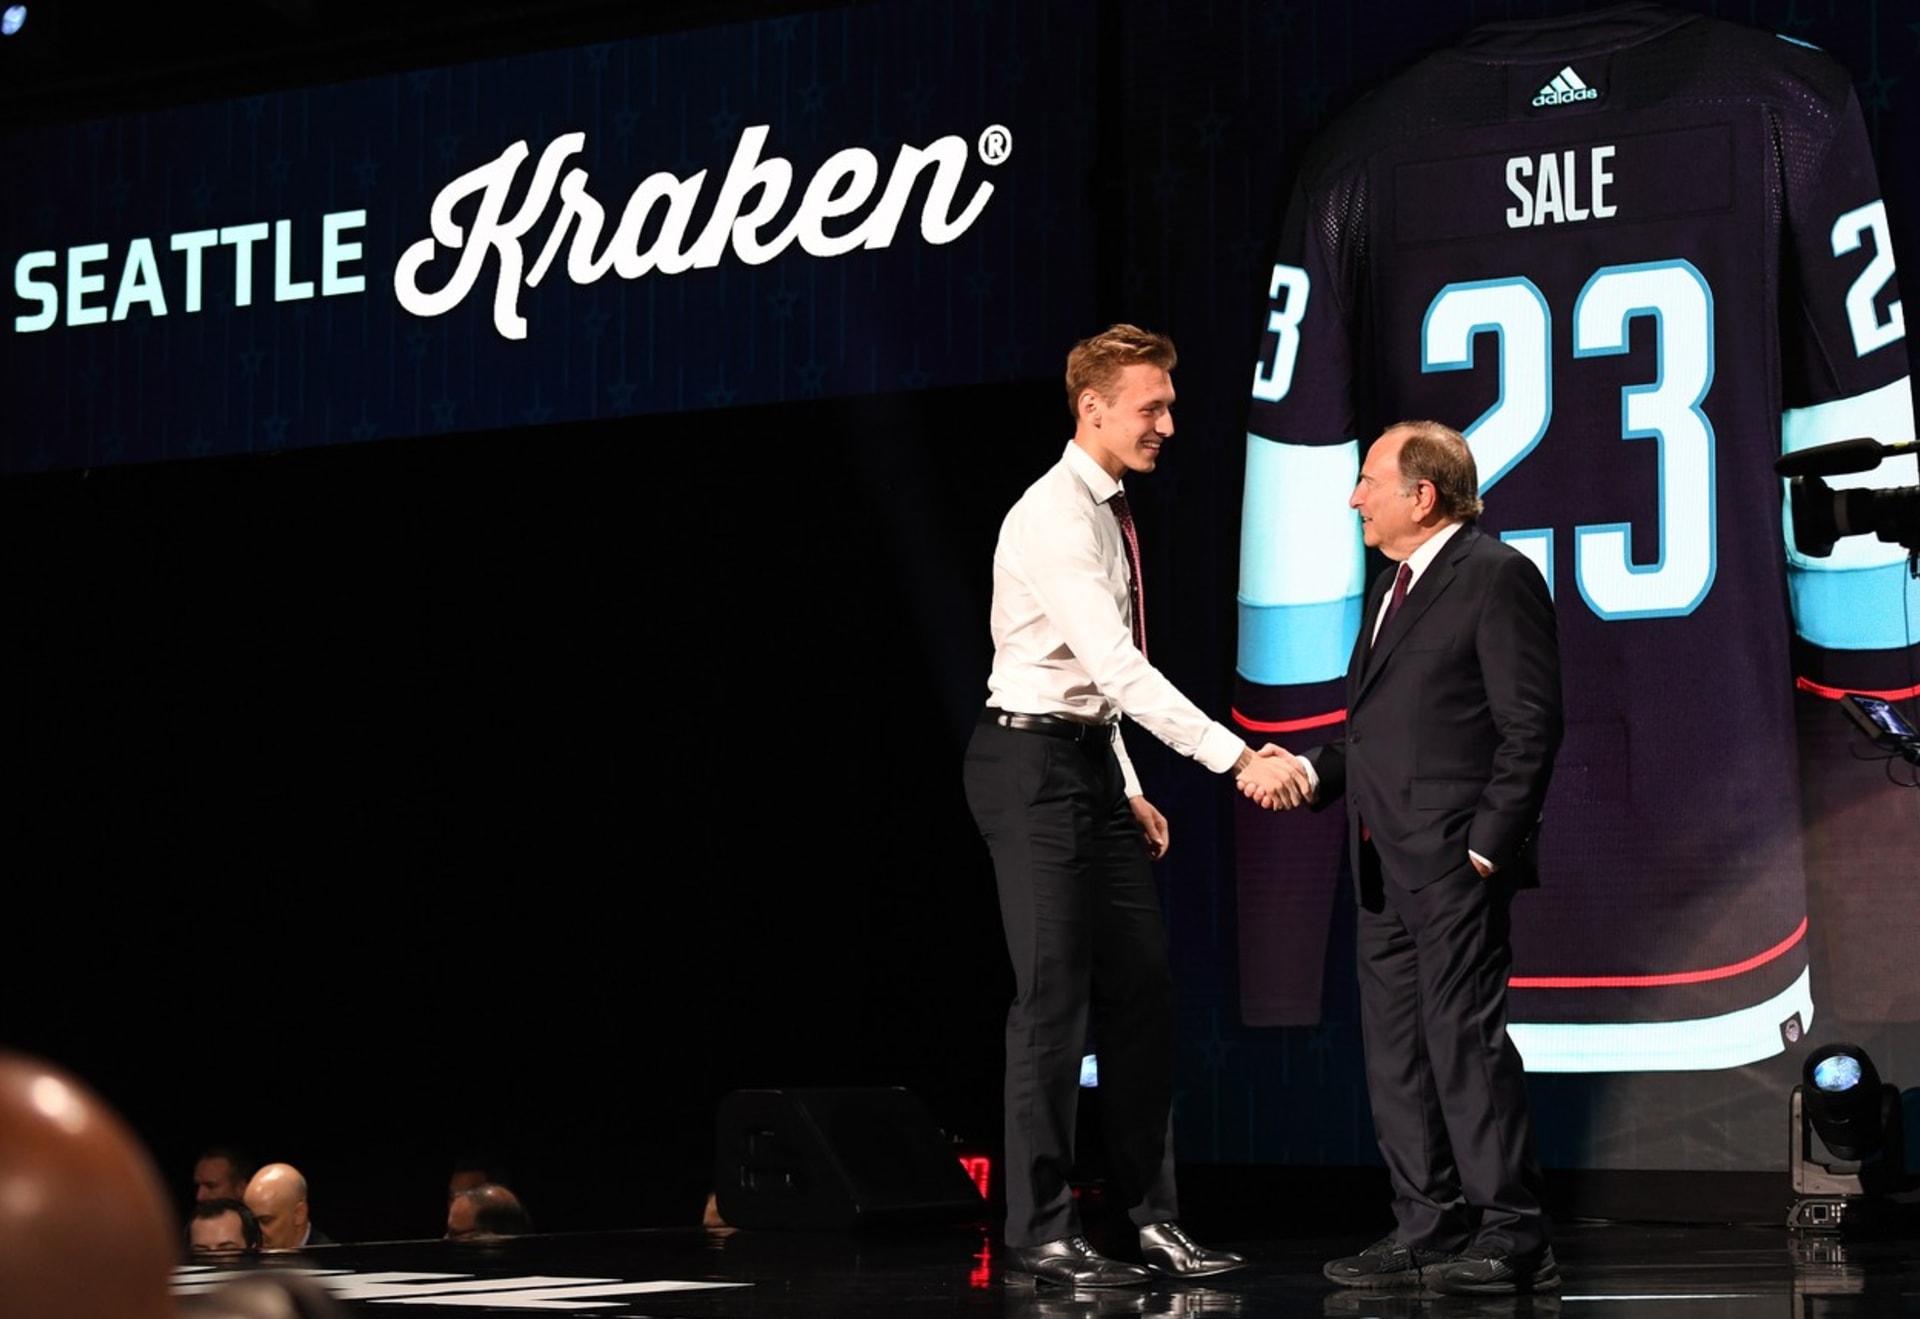 Útočníka Eduarda Šalého si na draftu NHL vybral z 20. místa Seattle.